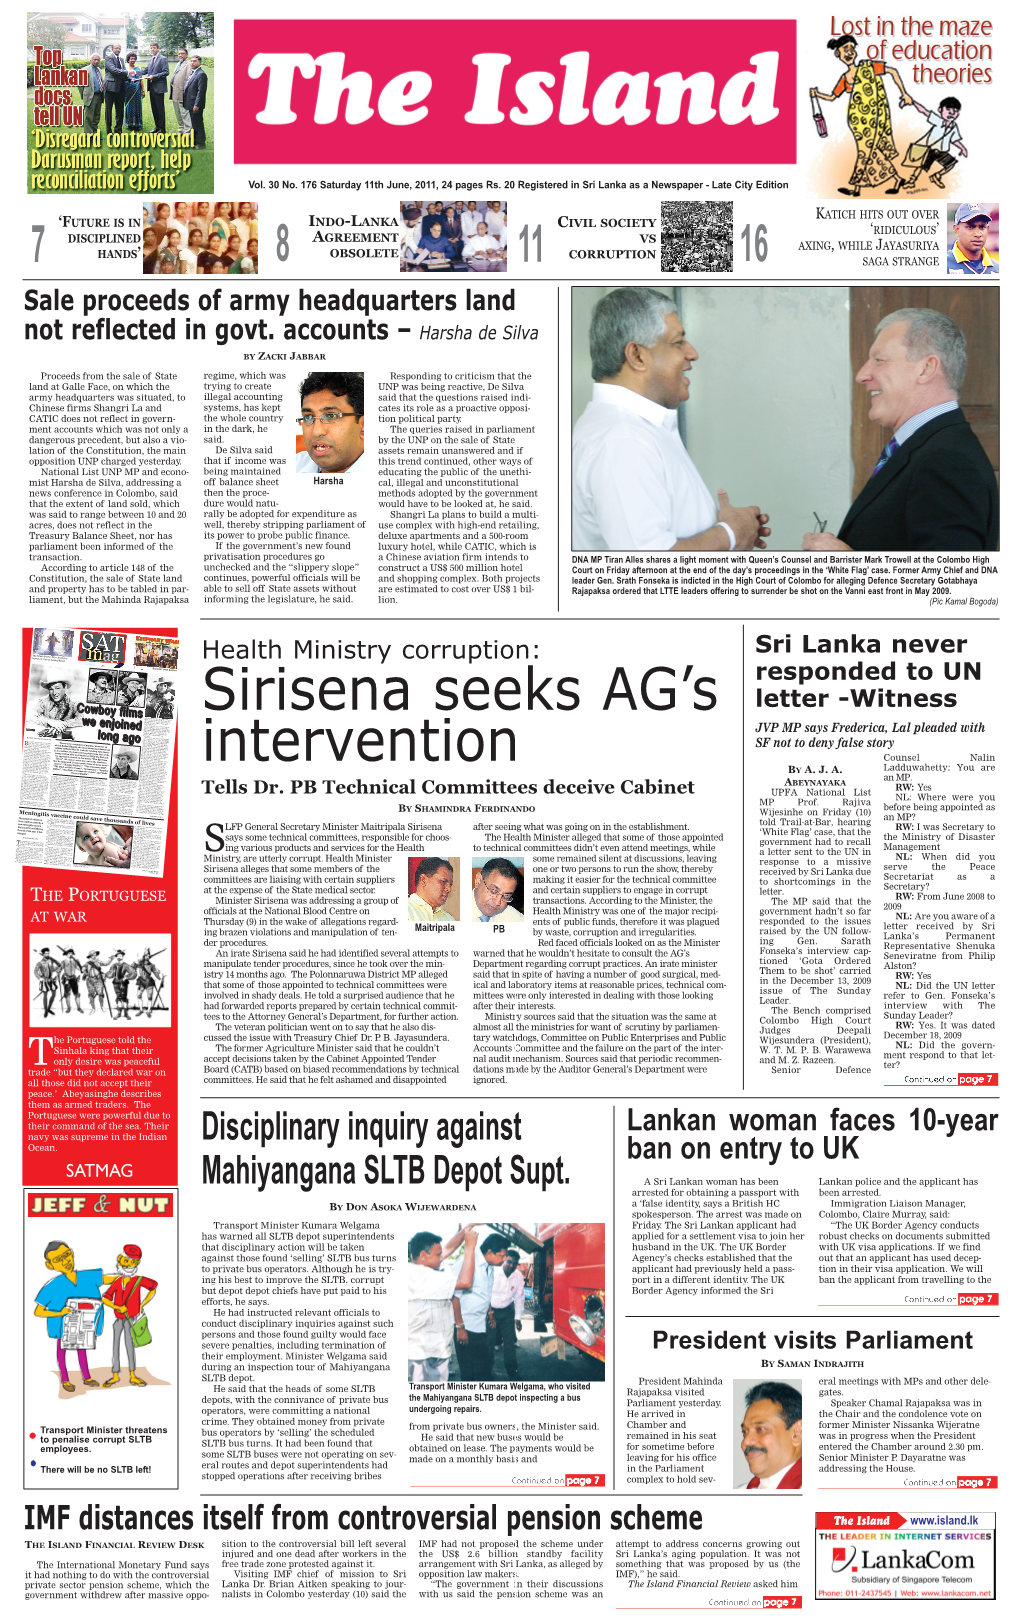 Sirisena Seeks AG's Intervention